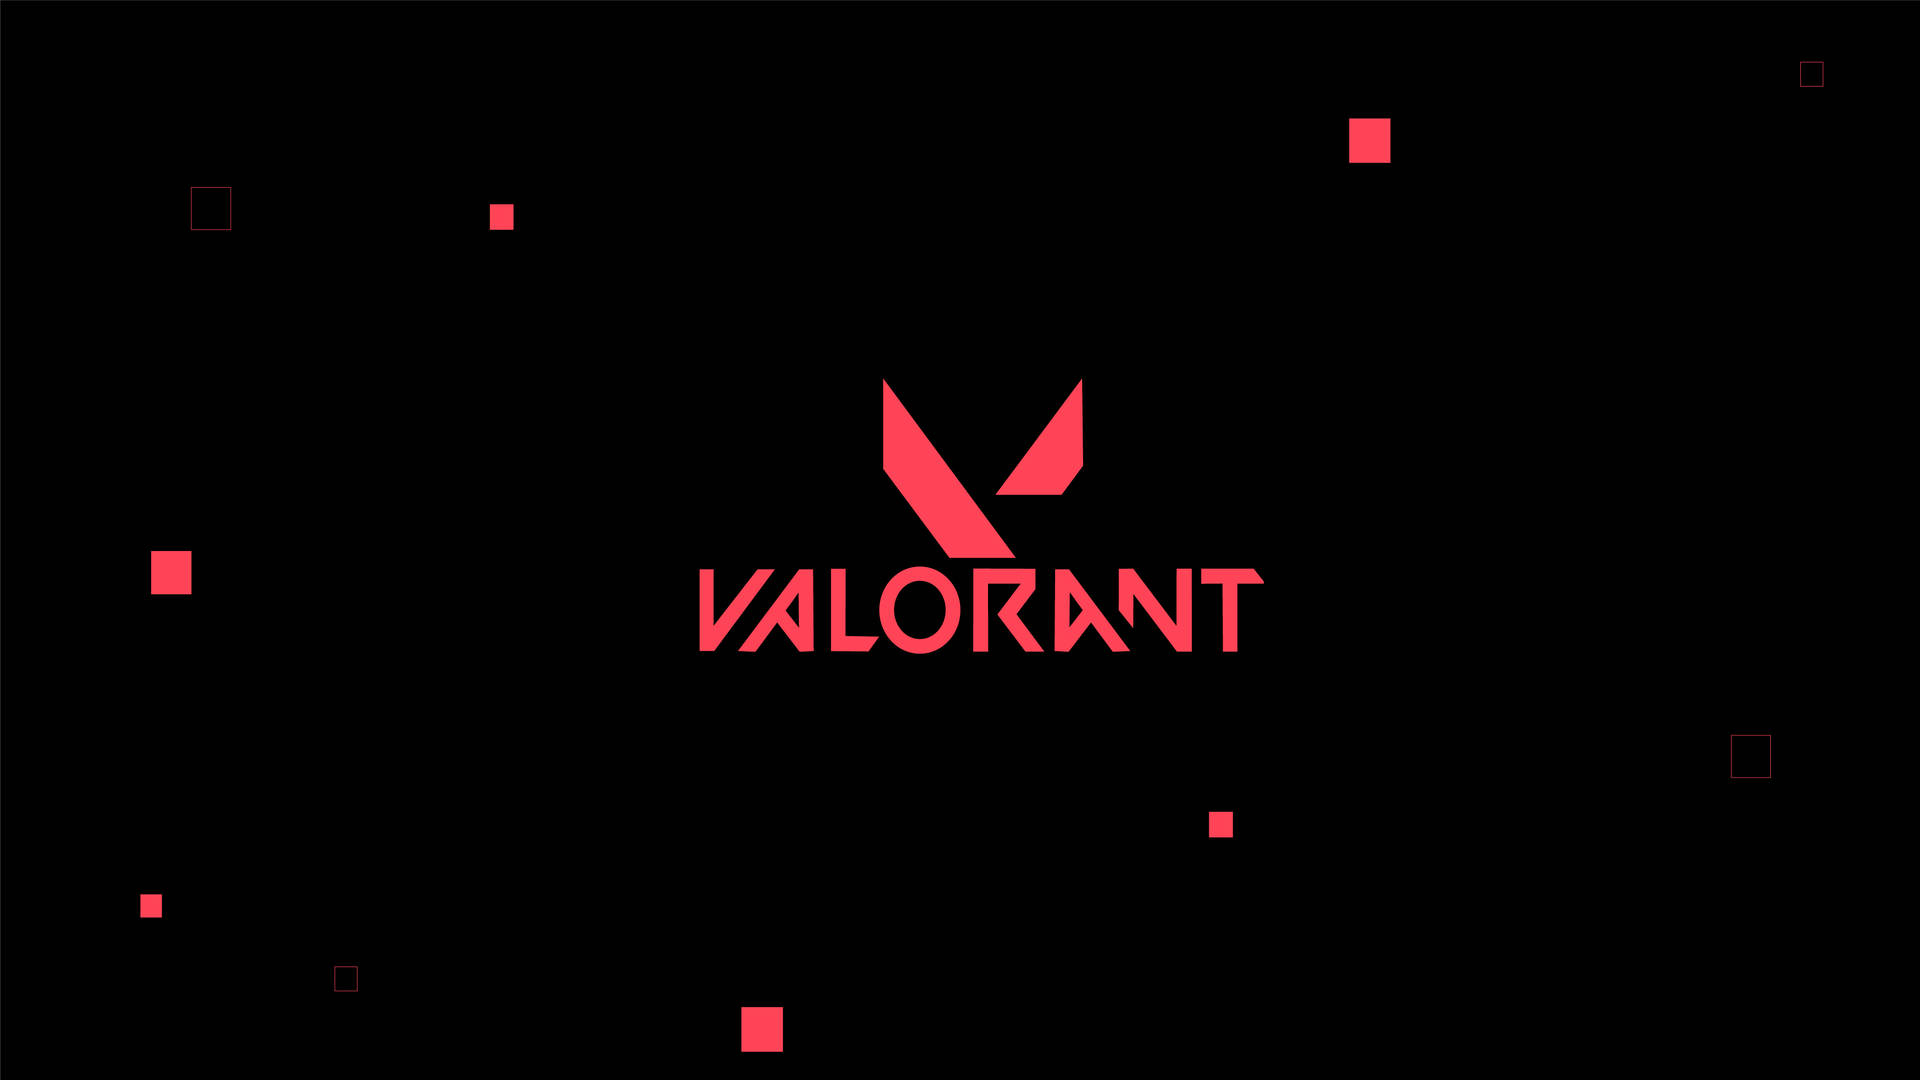 Logotipode Valorant En Rojo Y Negro. Fondo de pantalla